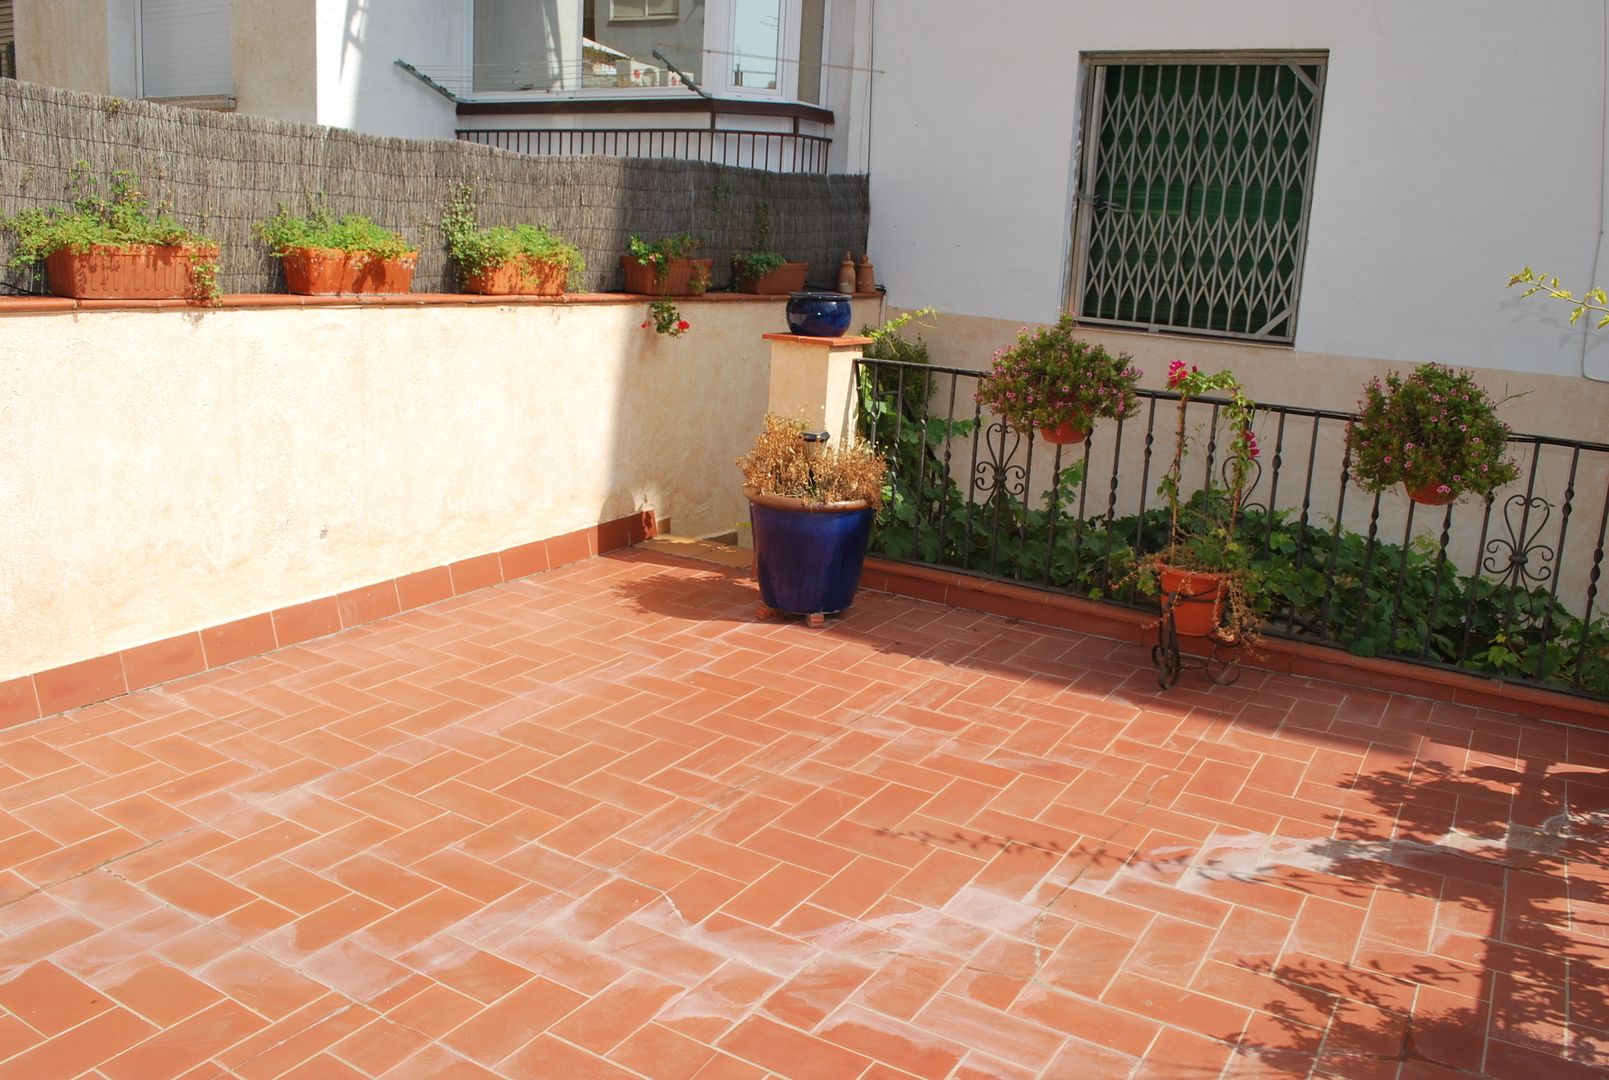 Construcción de una terraza, Vicente Galve Studio Vicente Galve Studio Patios & Decks